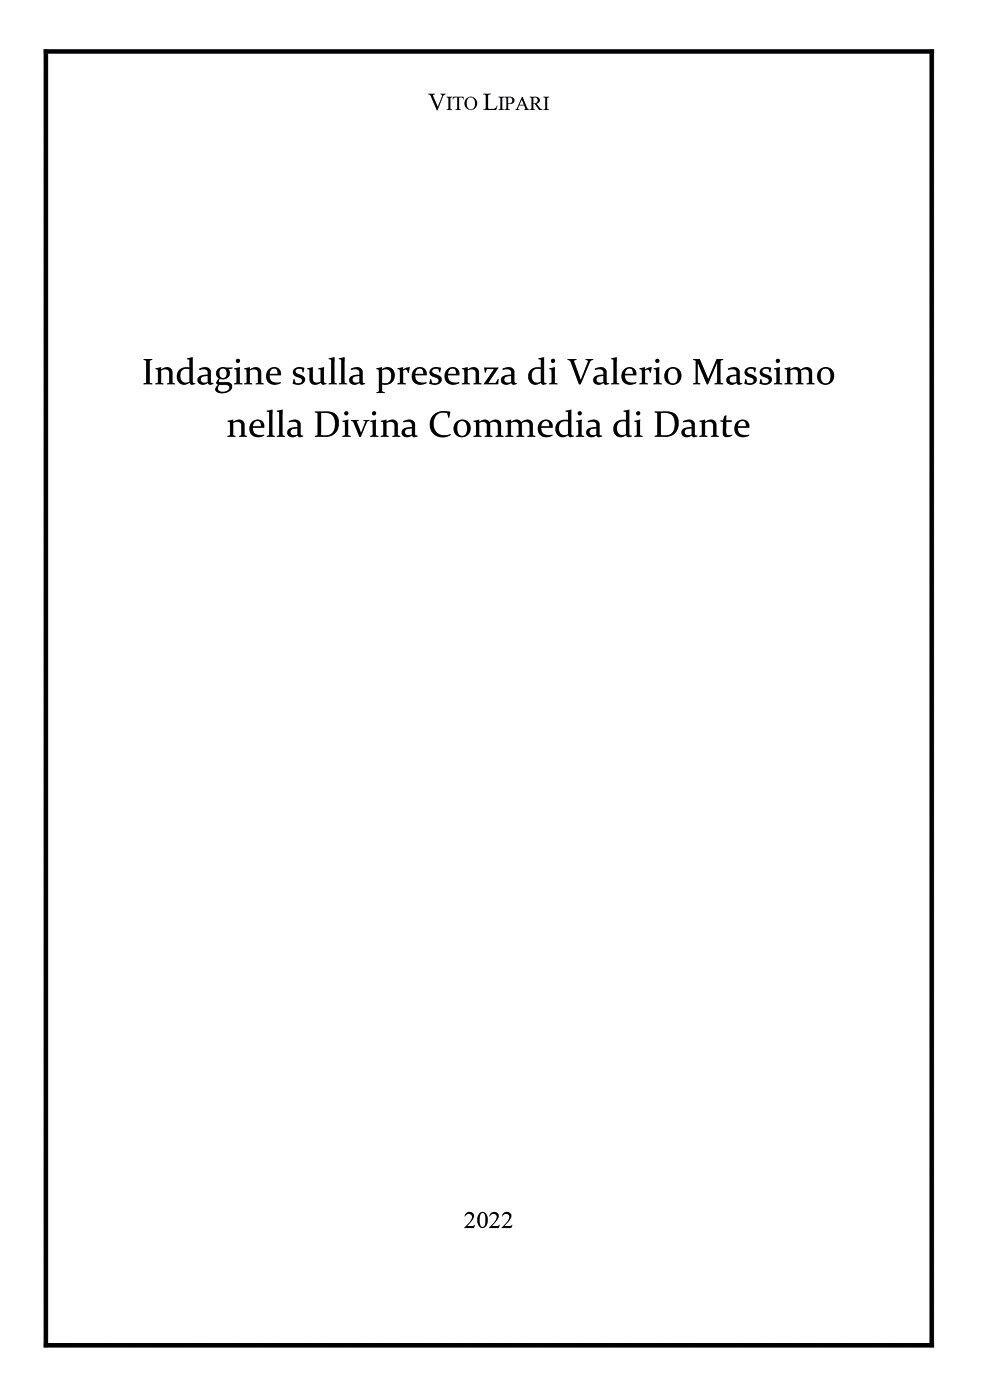 Indagine sulla presenza di Valerio Massimo nella Divina Commedia di Dante di Vit libro usato